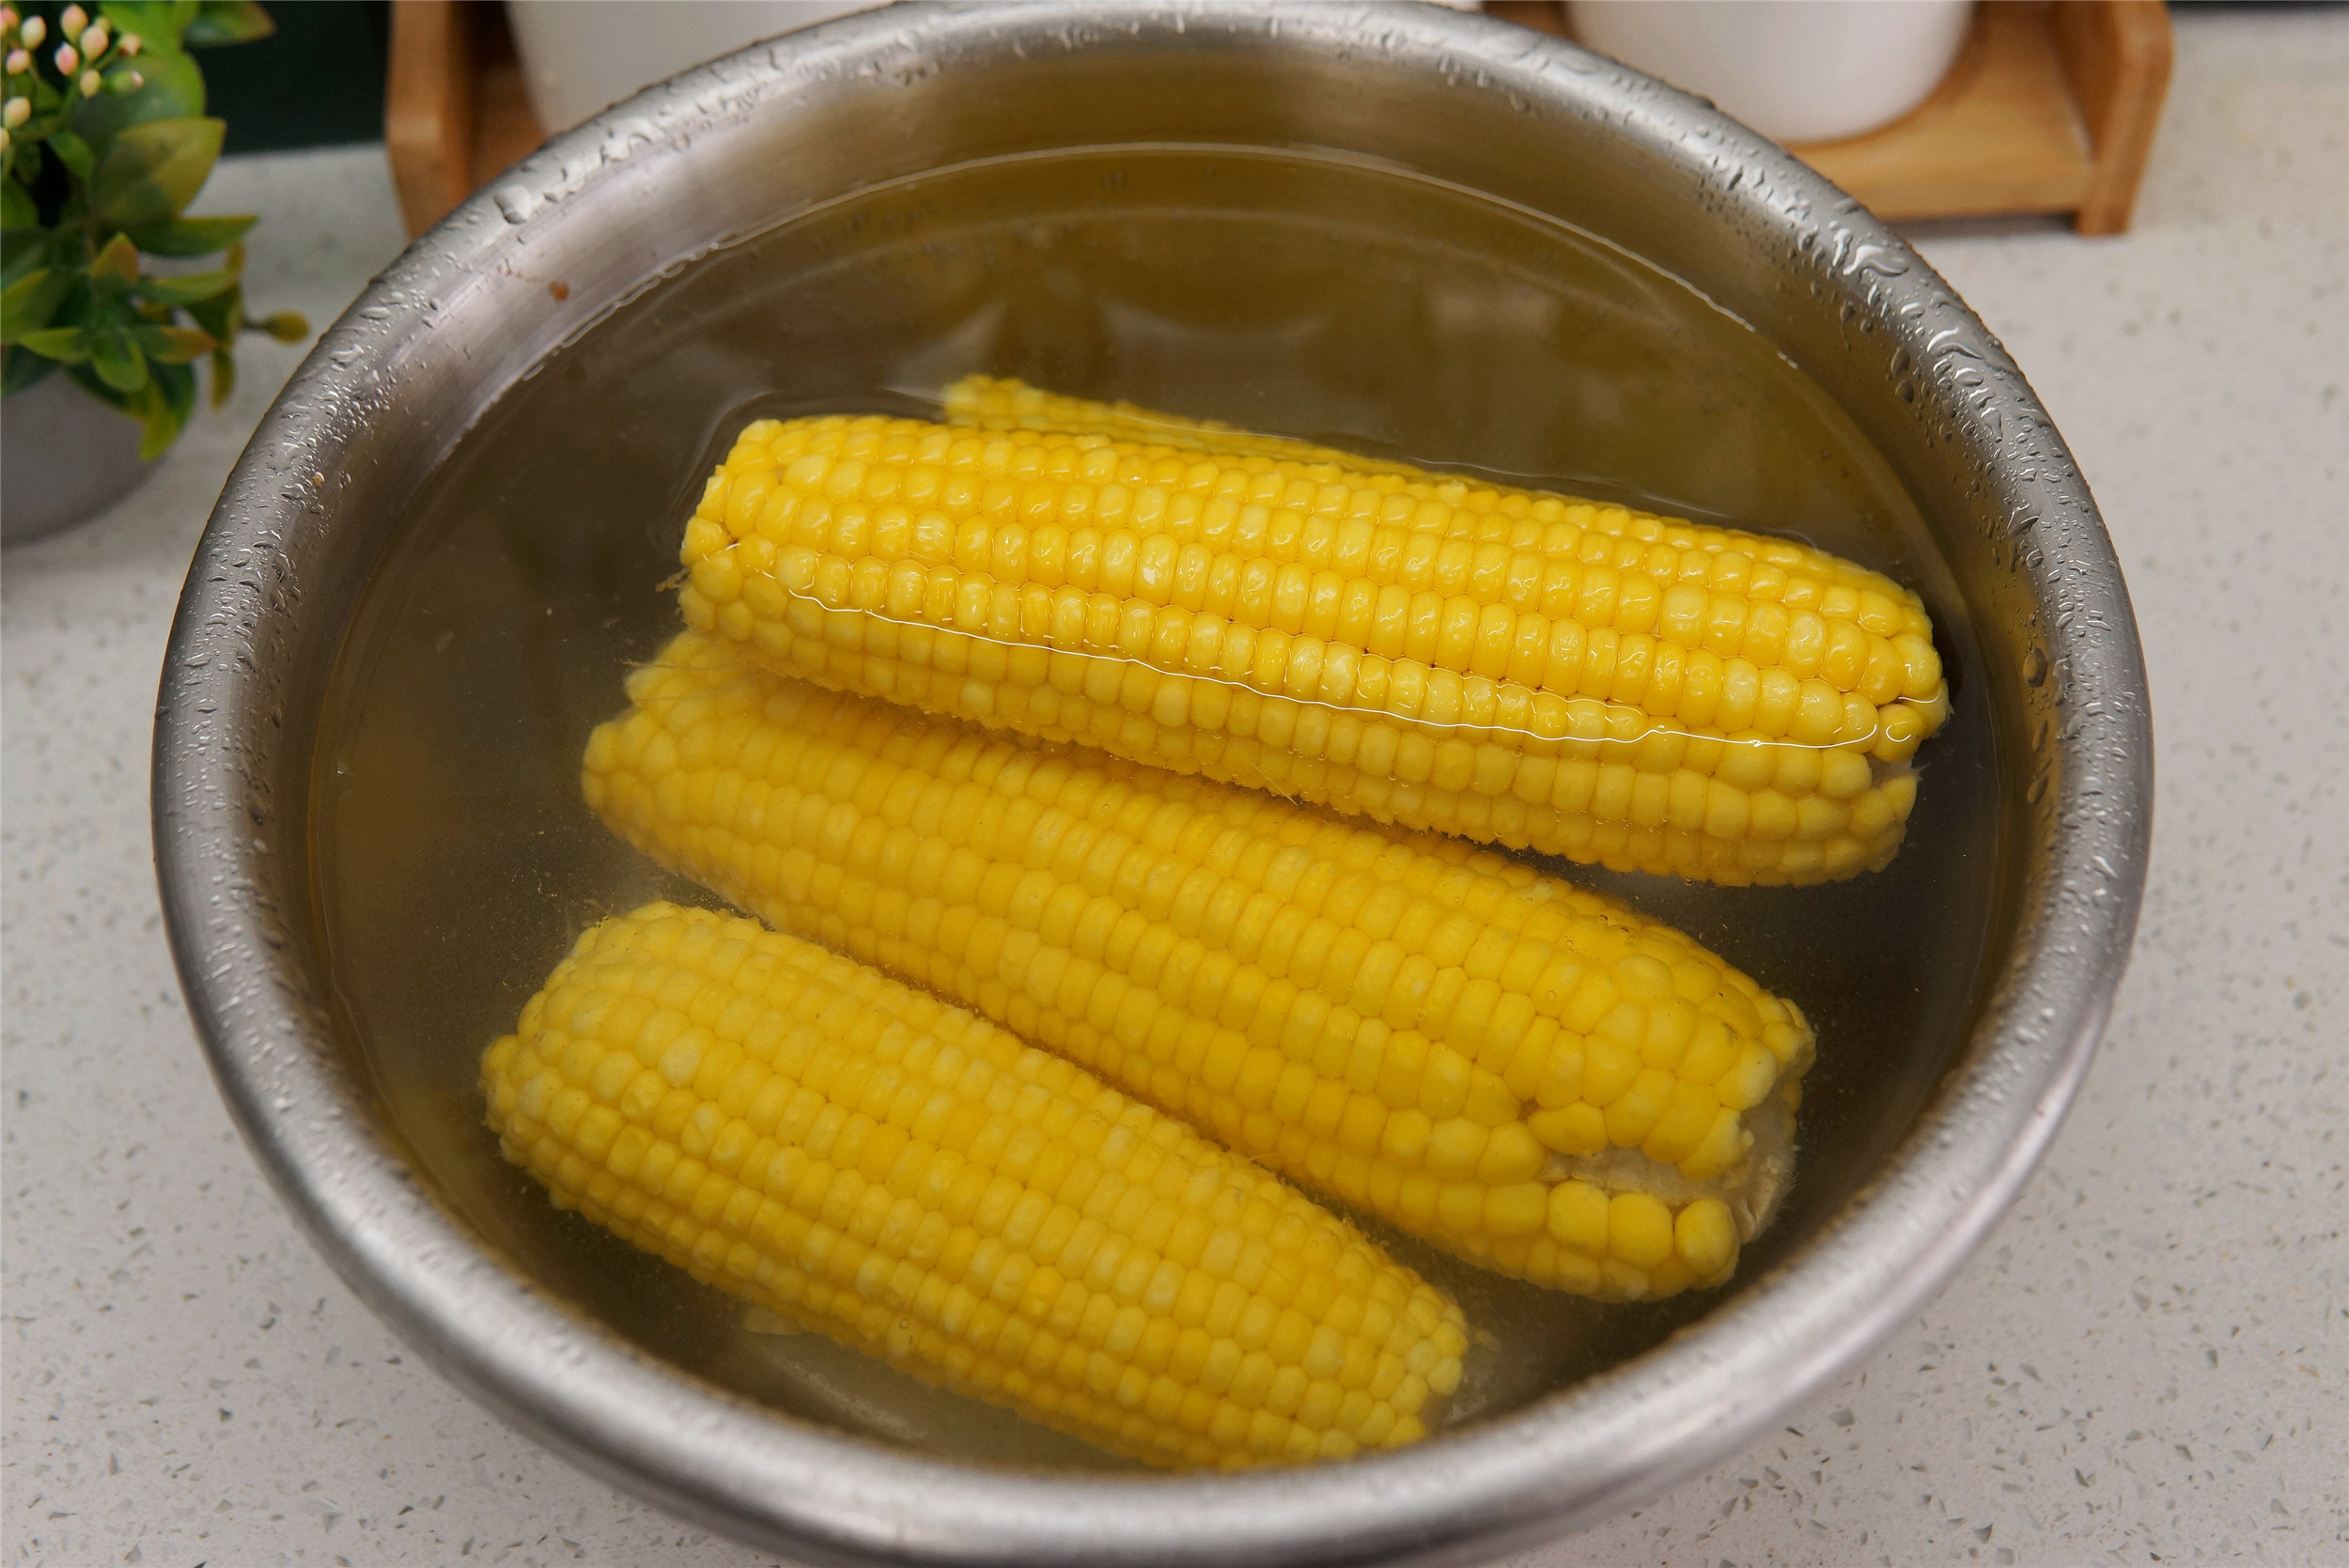 这样可以使玉米颗粒更加饱满,待煮熟之后,口感更佳